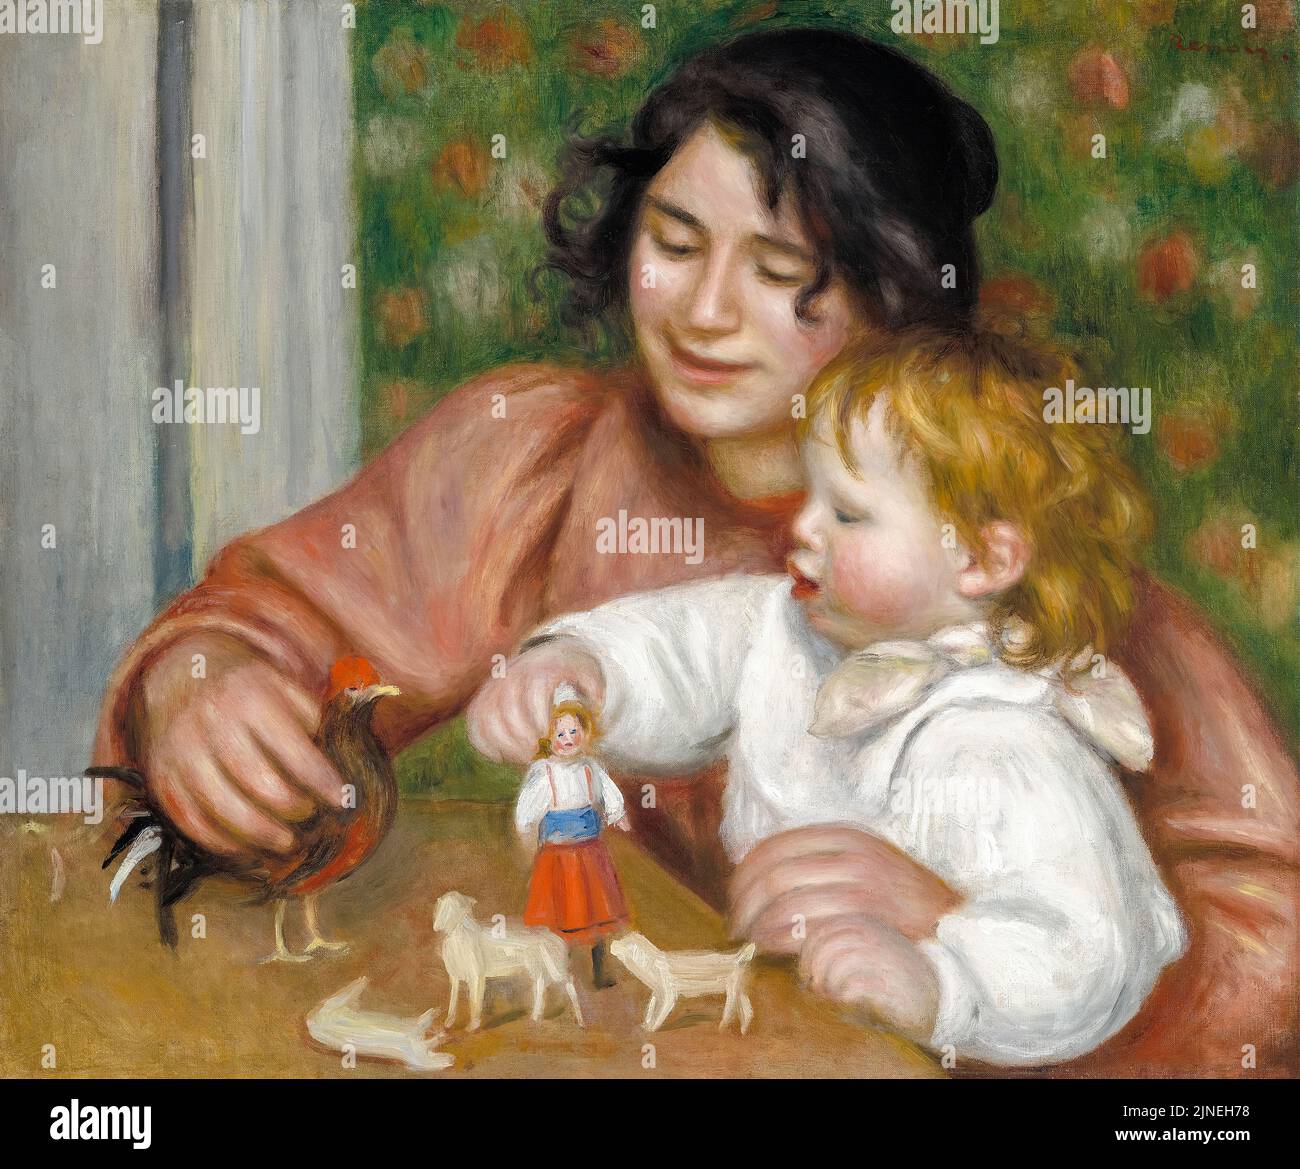 Enfant avec Toys, Gabrielle, et le fils de l’artiste, Jean, Peinture à l'huile sur toile par Pierre Auguste Renoir, 1895-1896 Banque D'Images